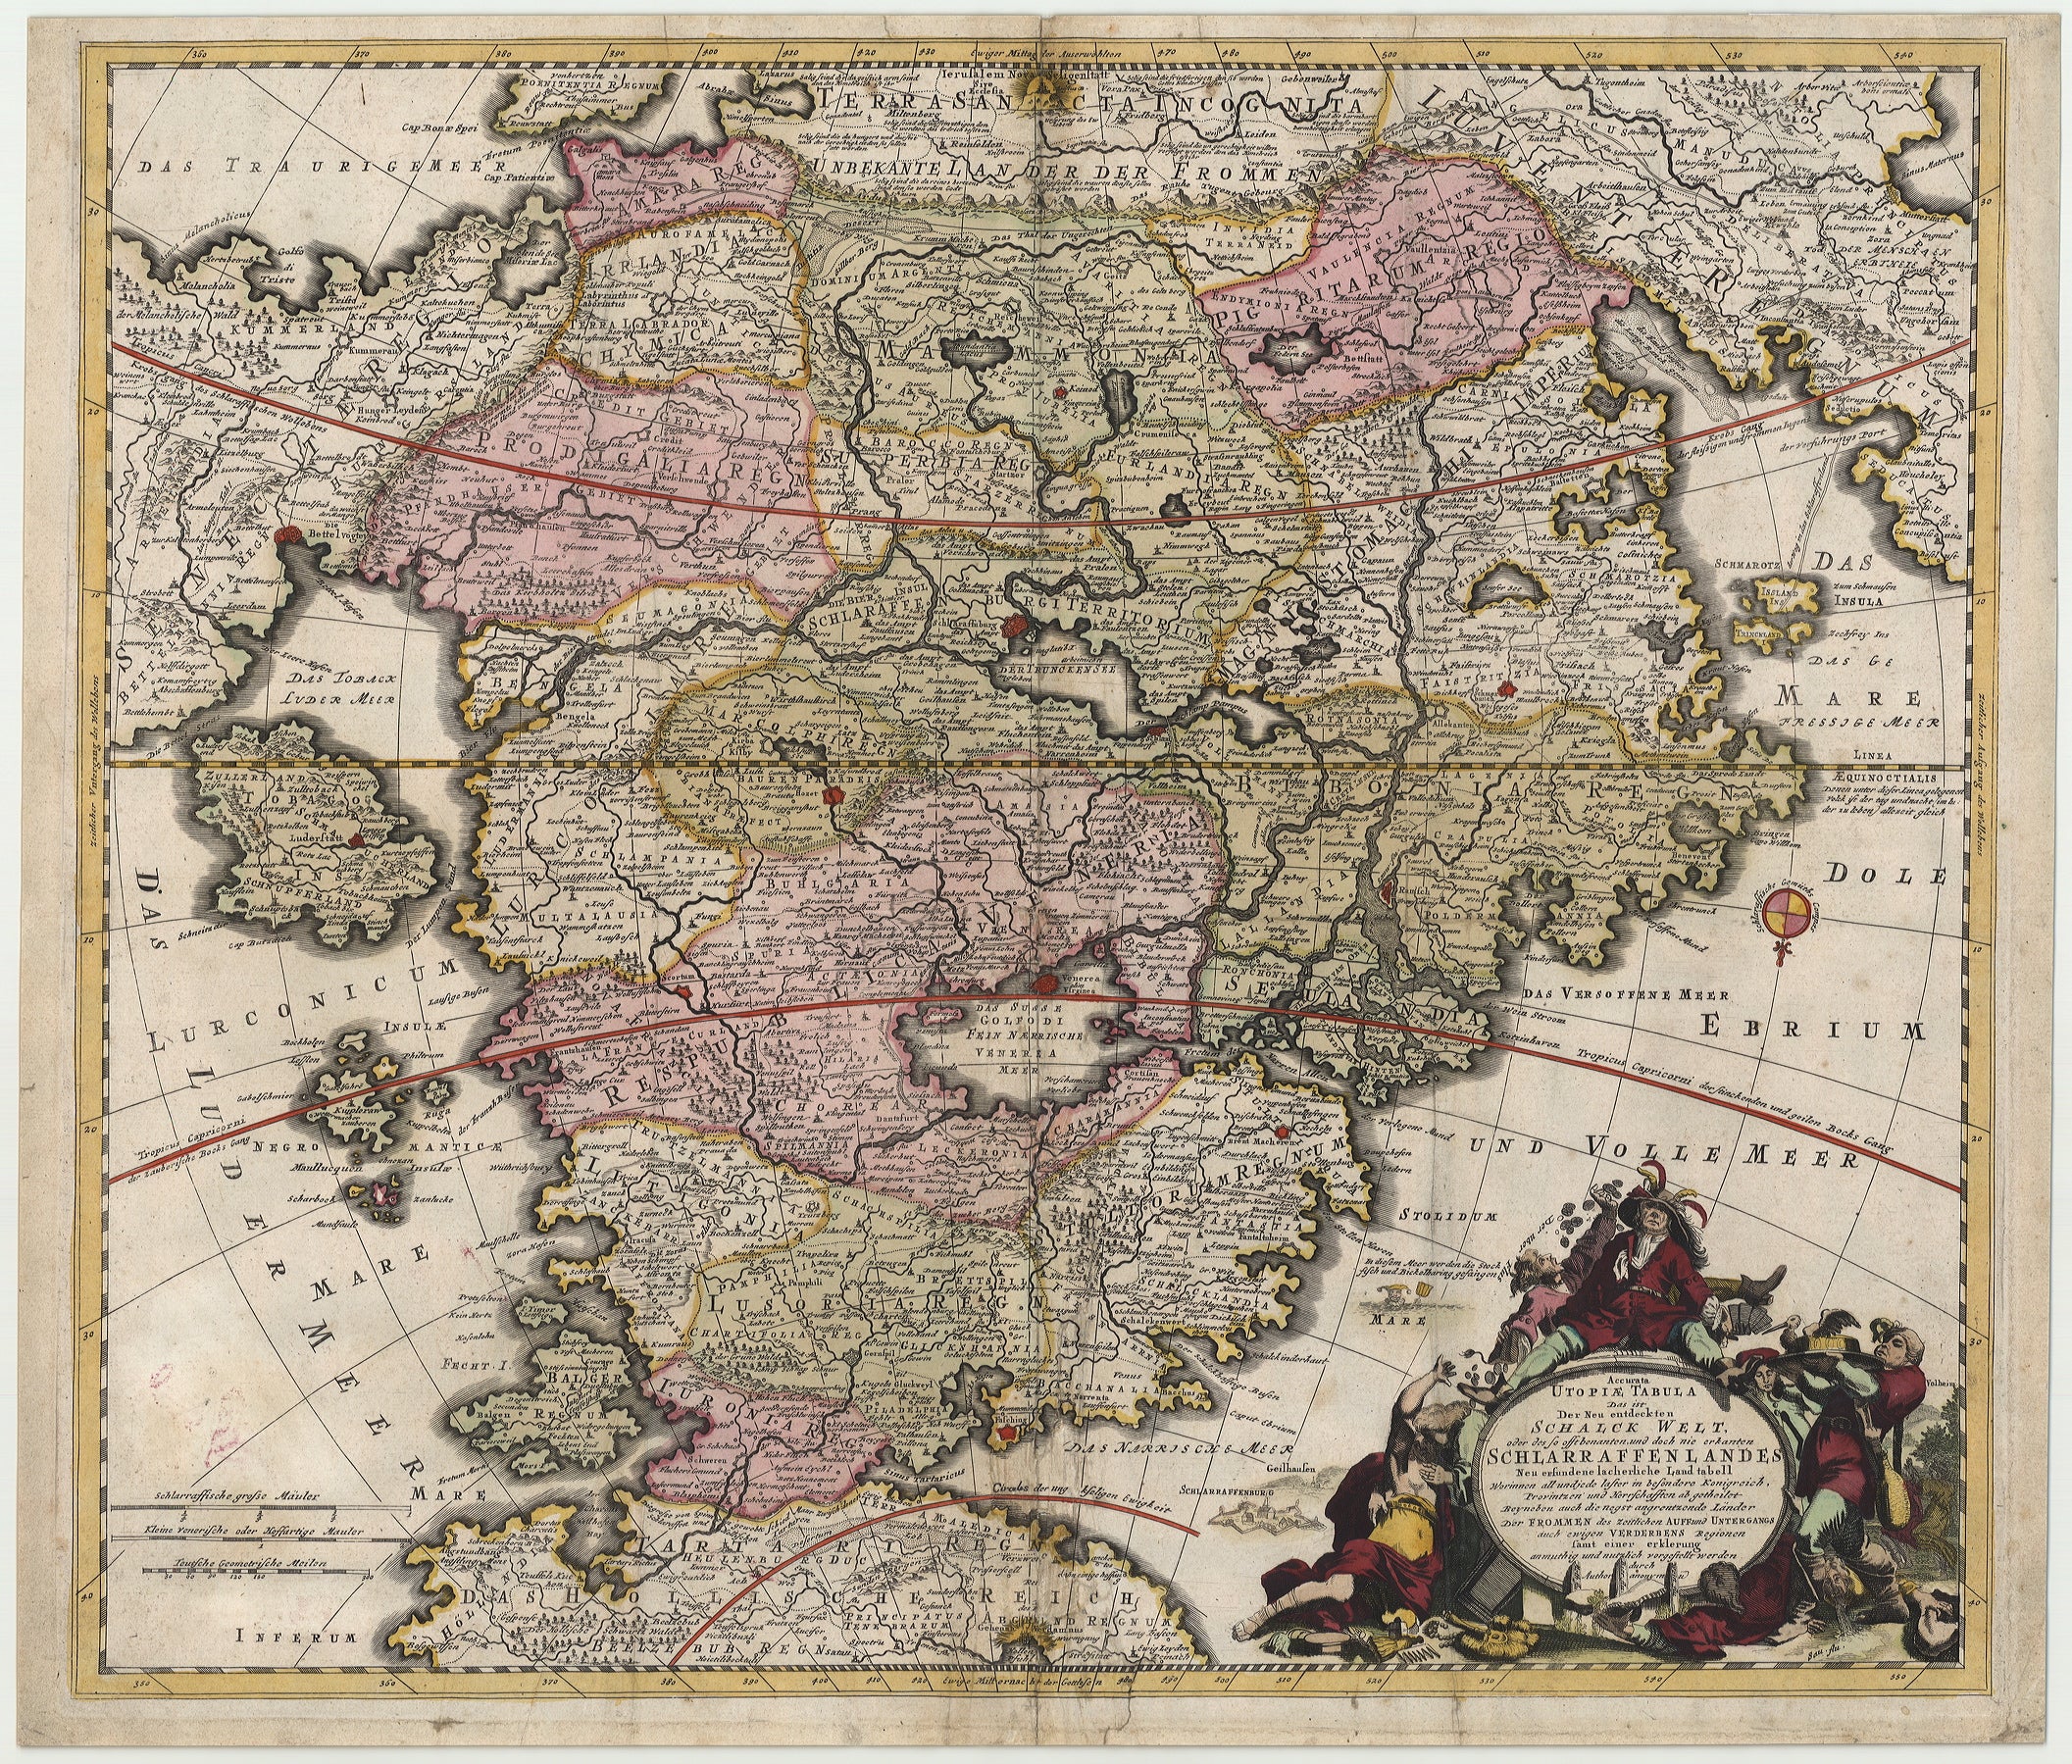 Utopie - Schlaraffenland ab 1700 von Johann Baptist Homann